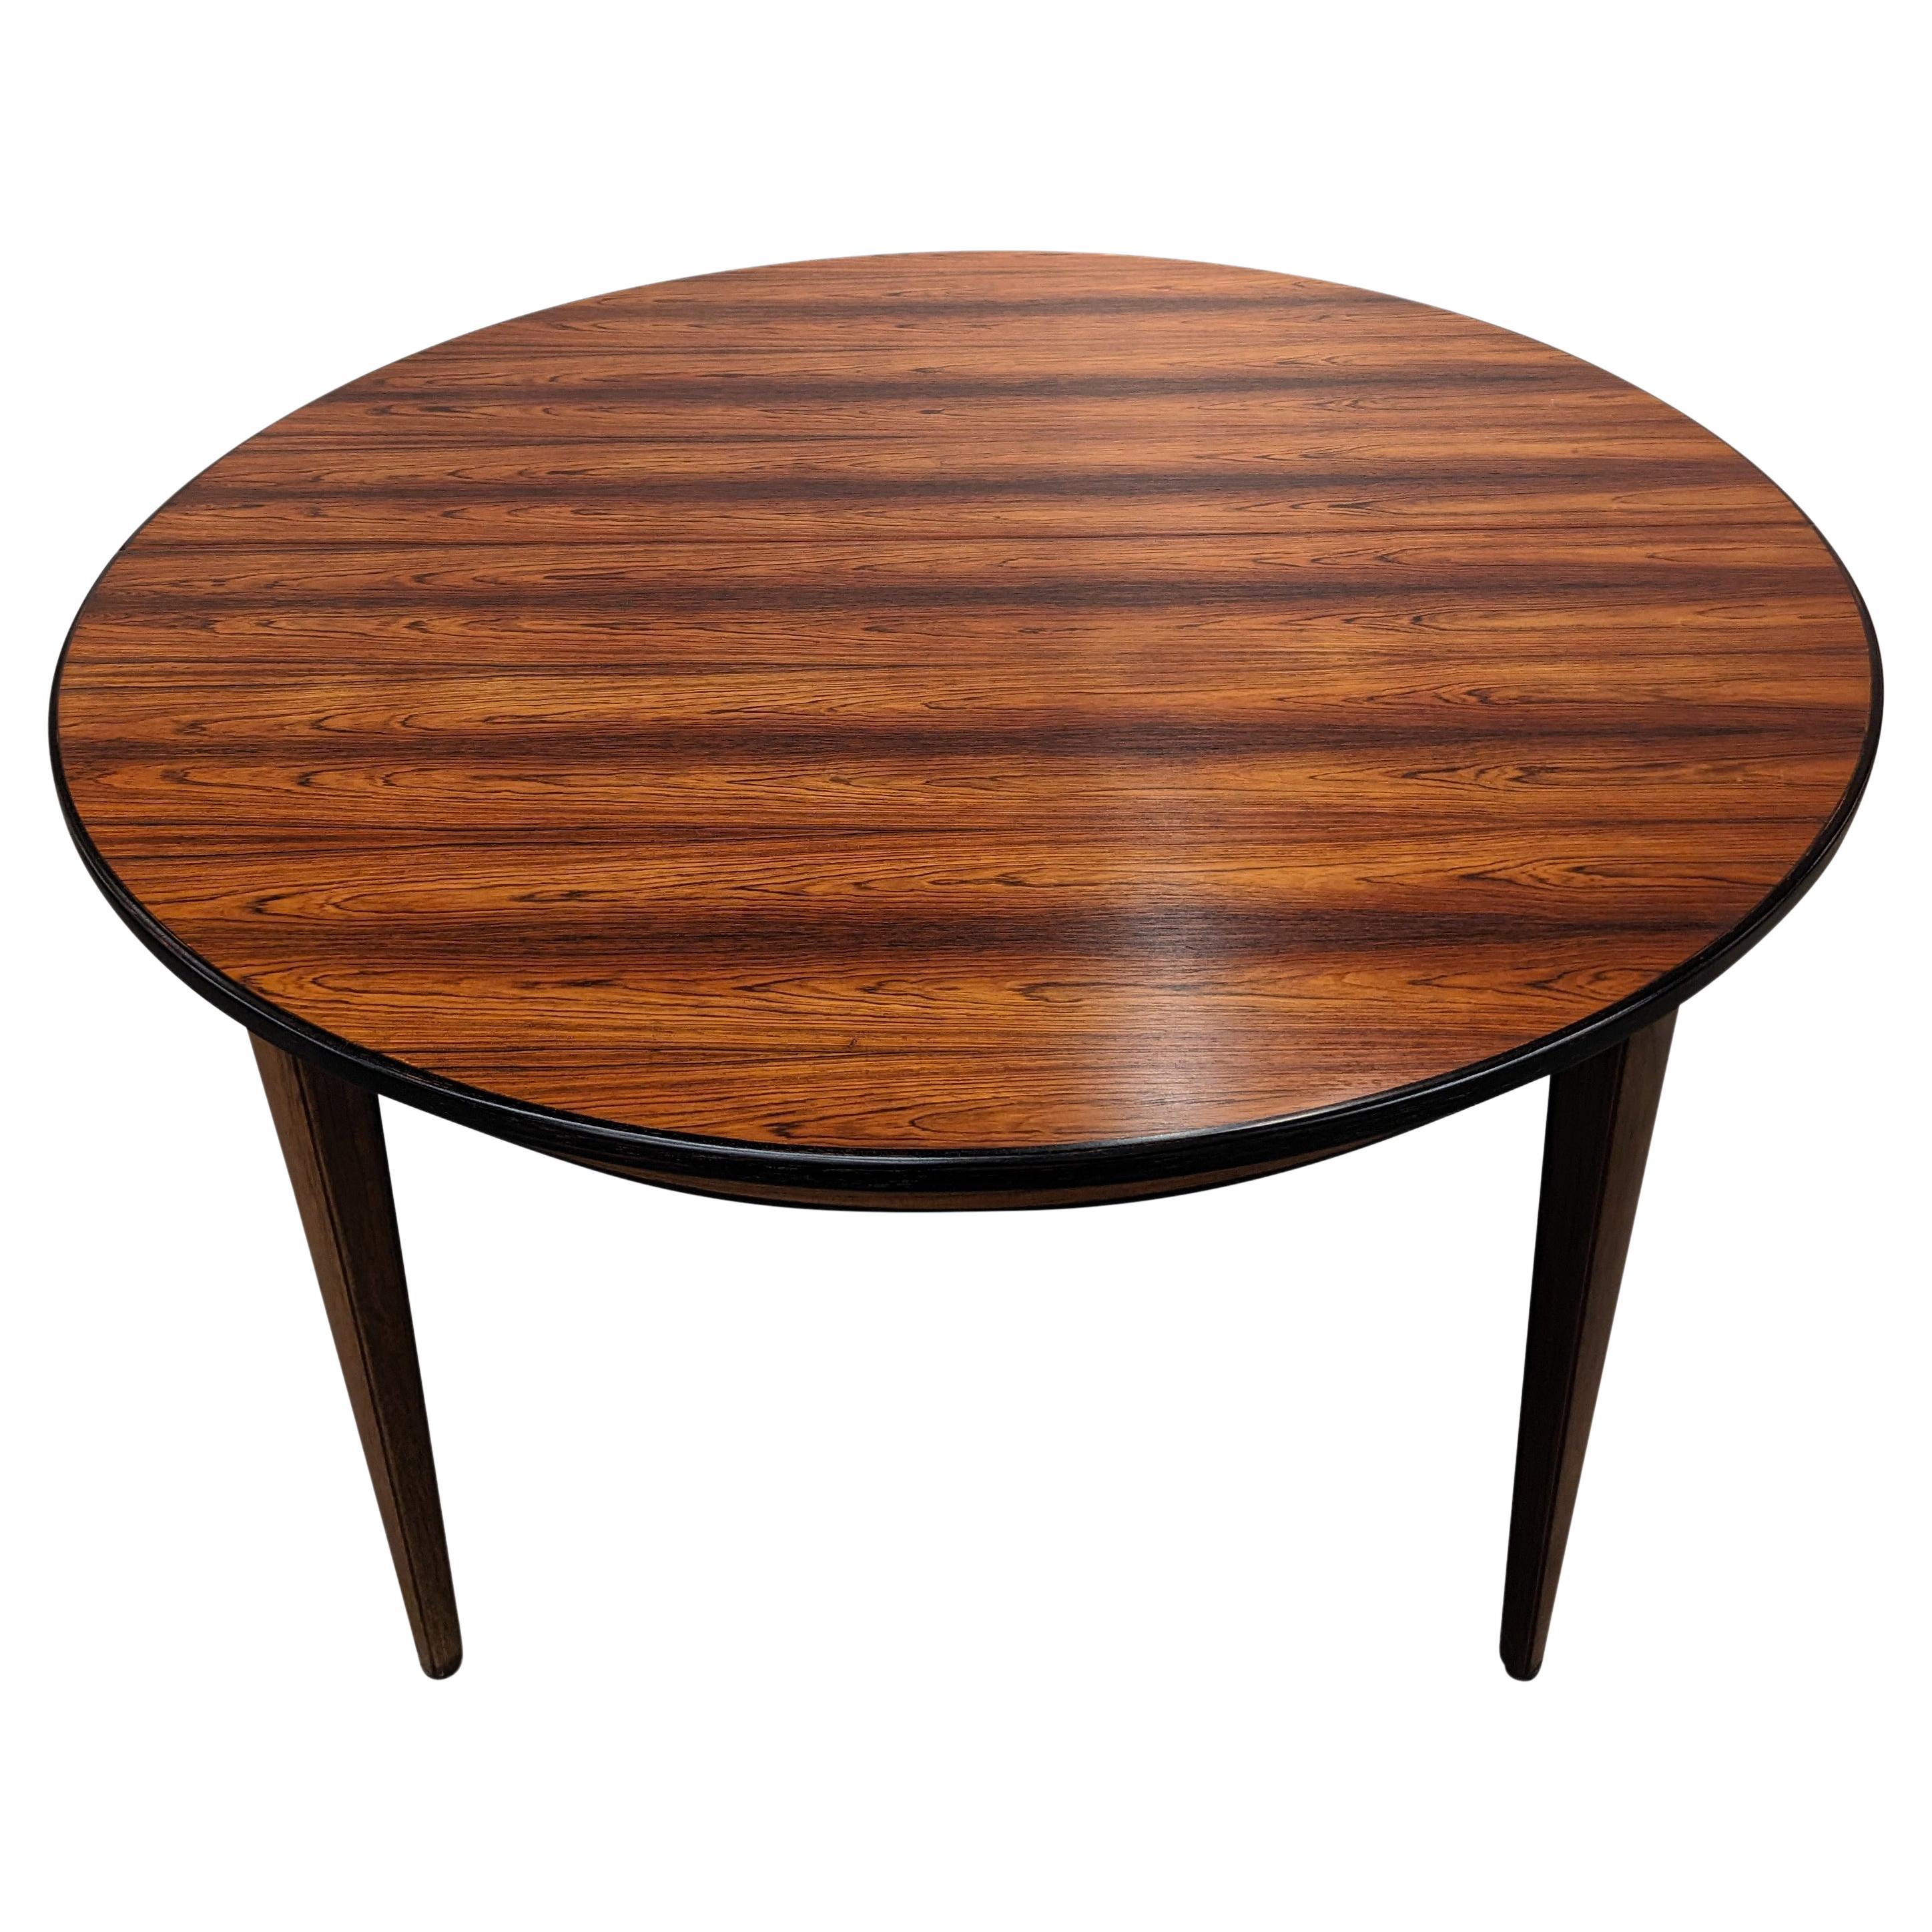 Omann Jun Round Rosewood Table w 1 Leaf - 022433 Vintage Danish Mid Century